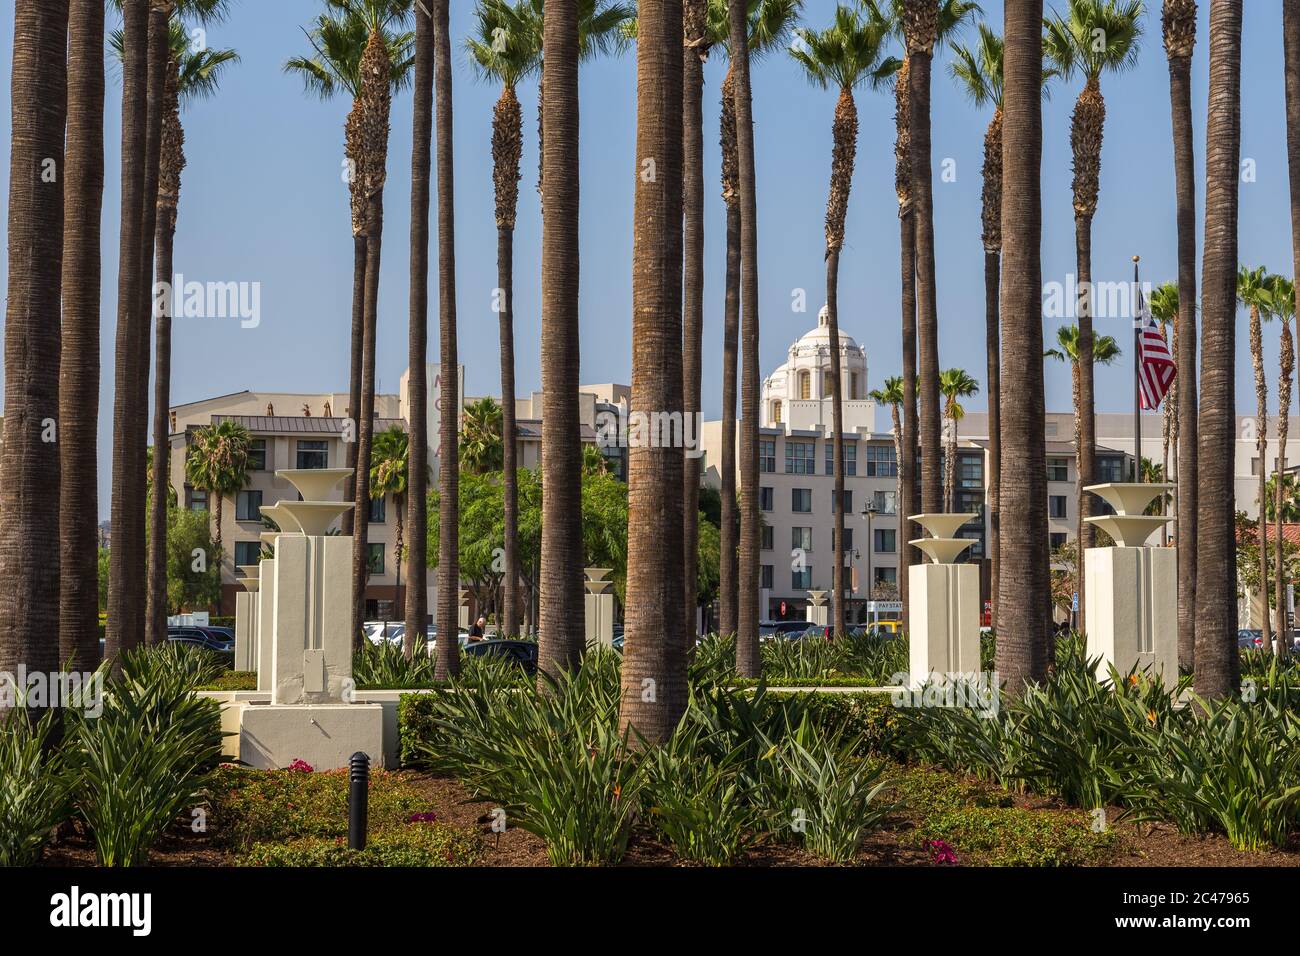 Los Angeles, California, USA- 11 June 2015: Father Serra Park at Paseo De La Plaza. Stock Photo